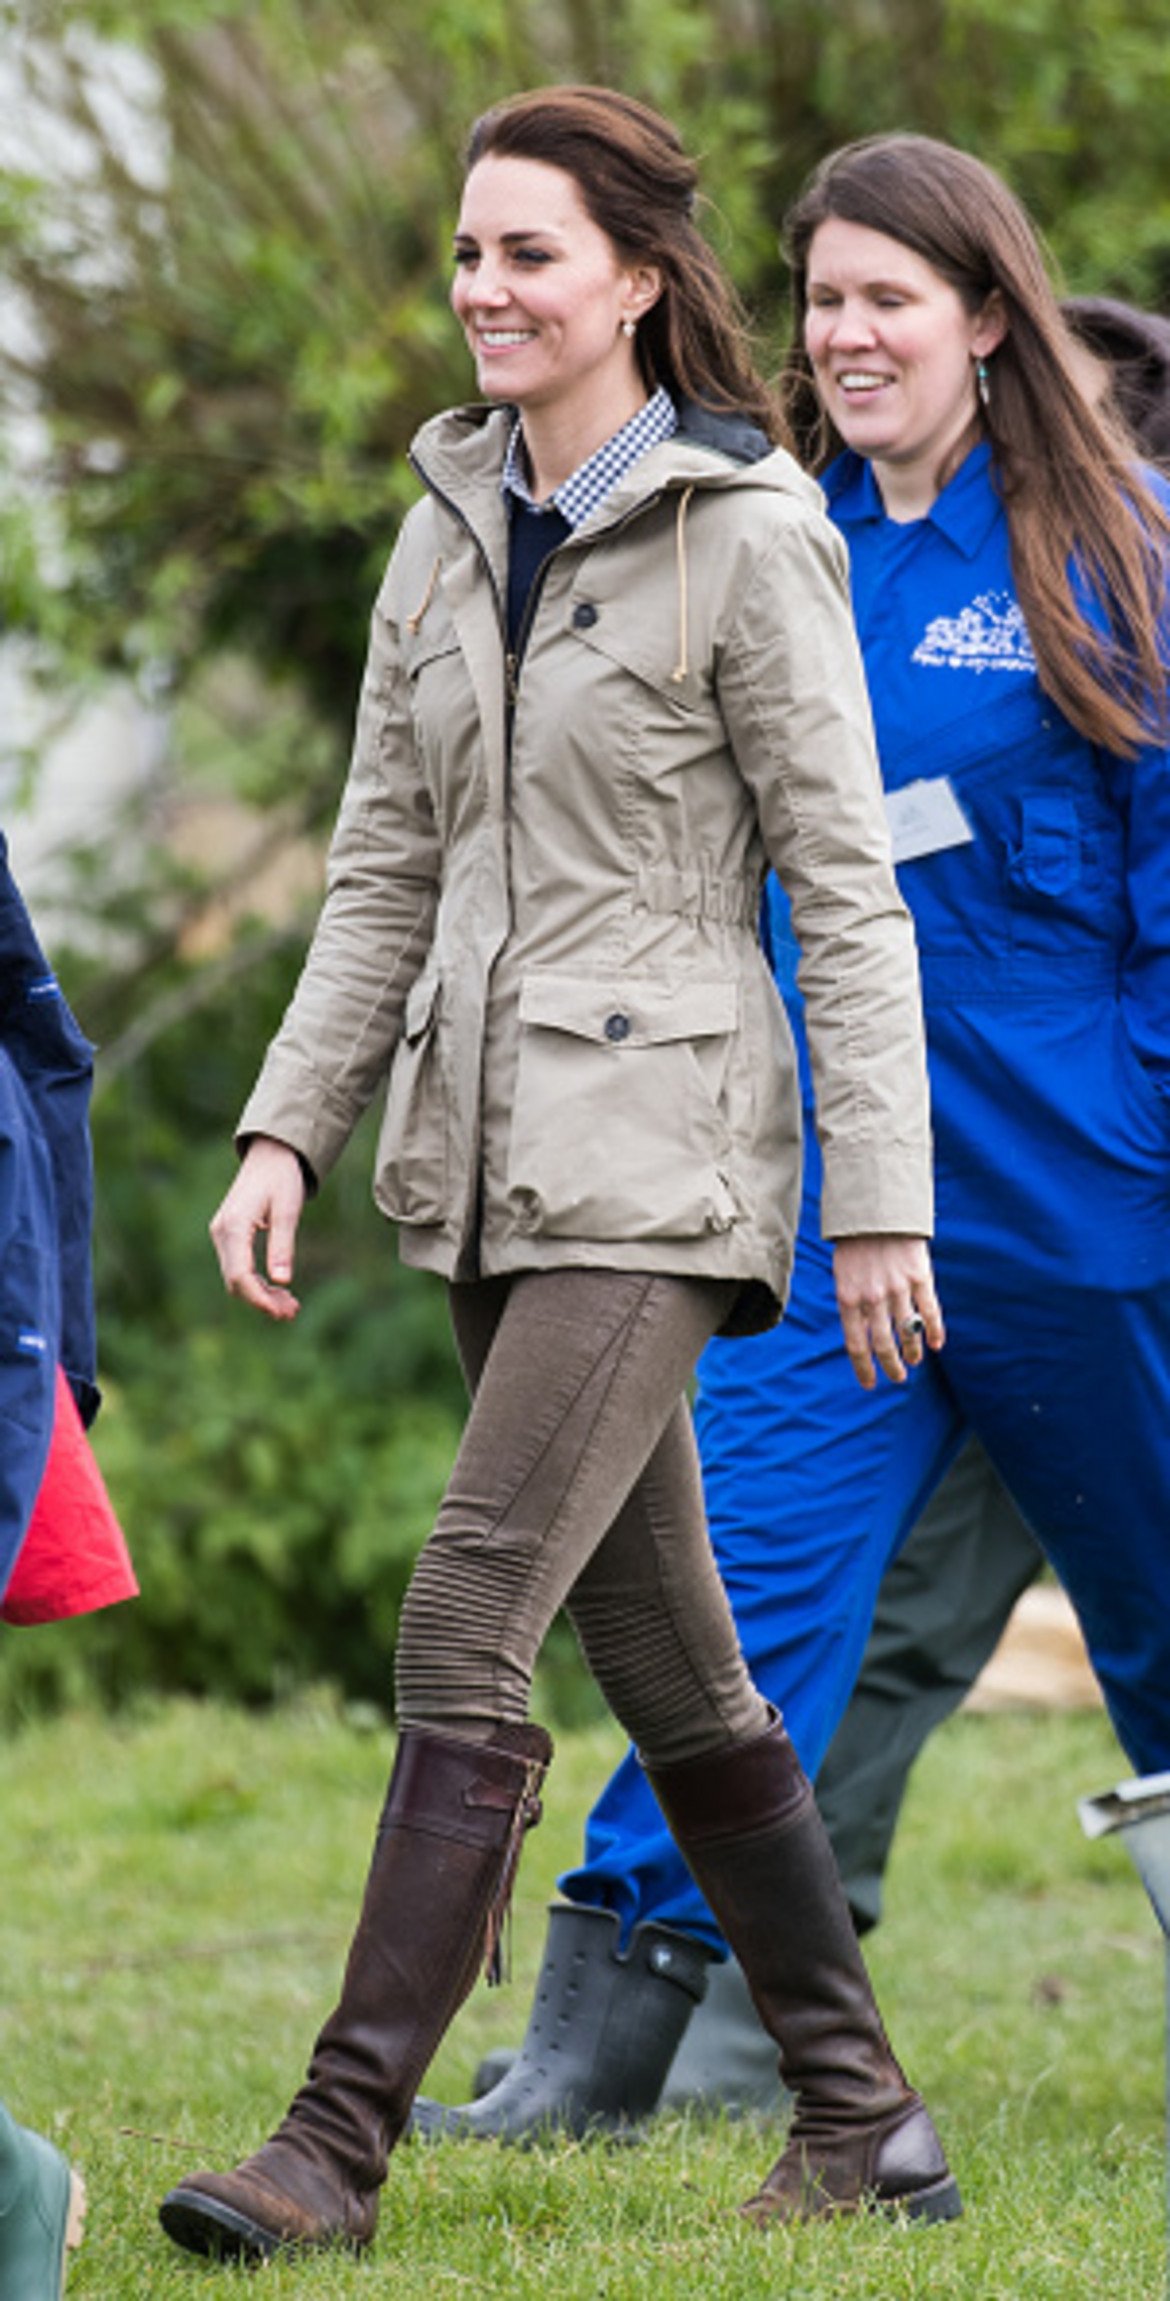 Дали една жена може да бъде стилна със зимно яке, жокейски ботуши и вързана коса, без да изглежда твърде грубо и спортно? Явно може – комбинацията стои много добре на Кейт.